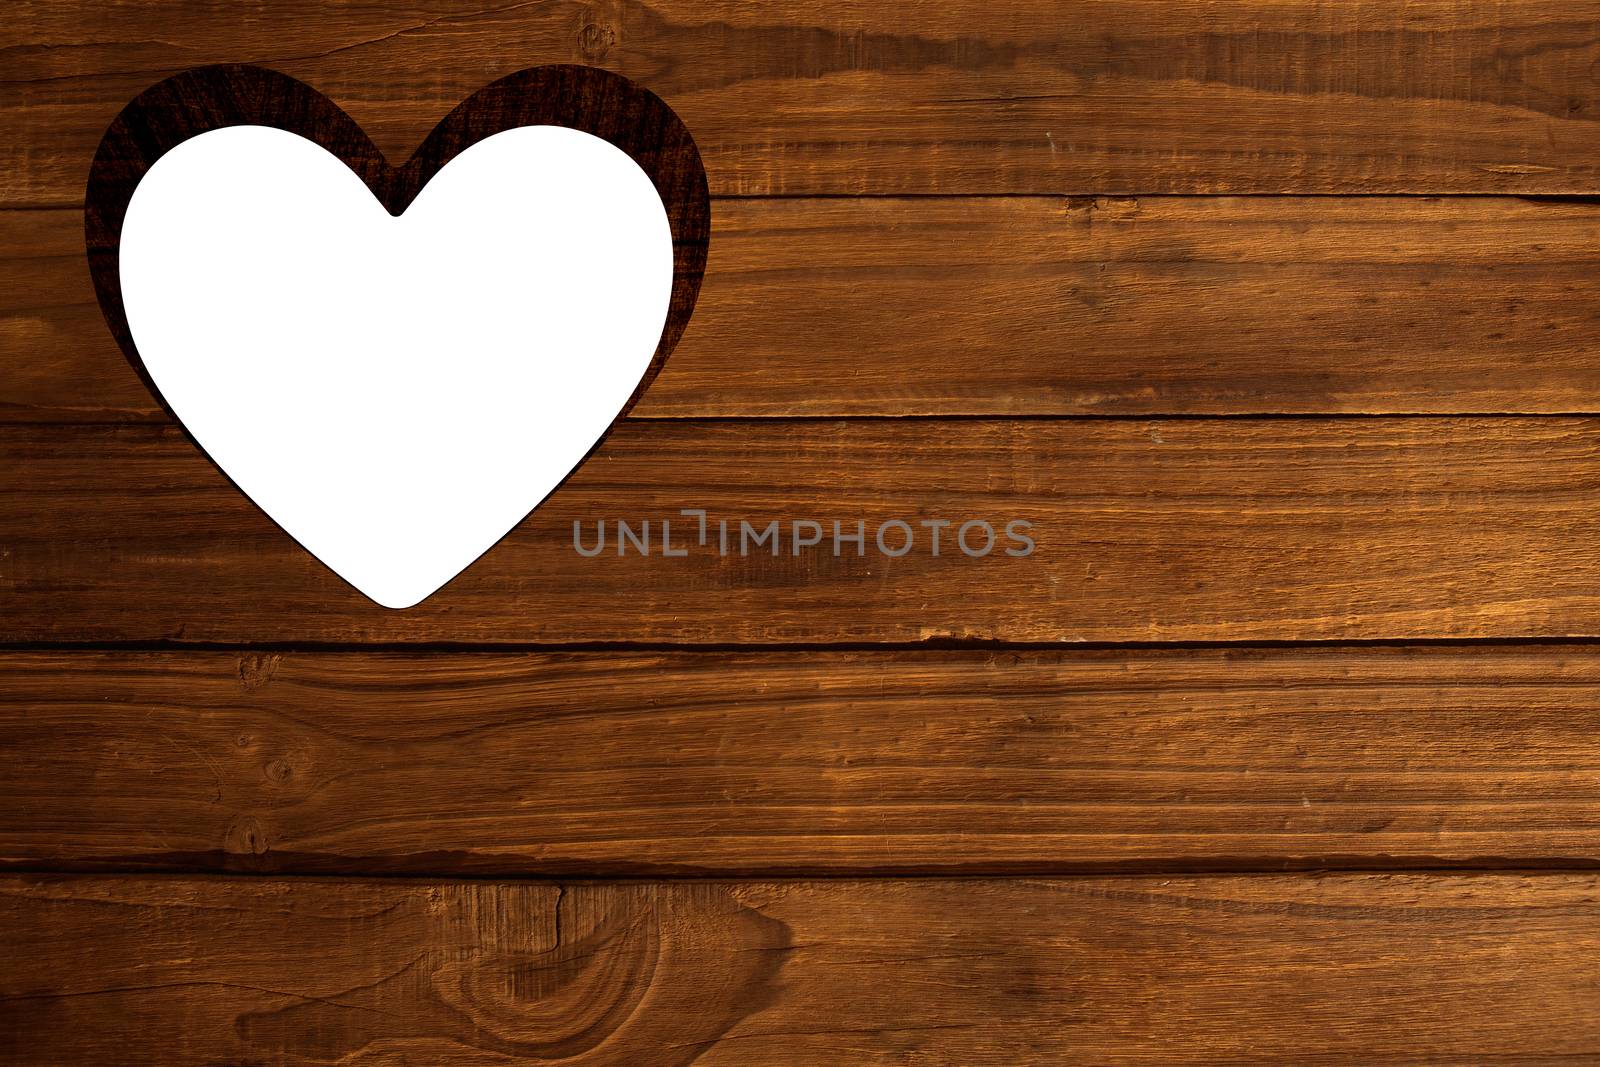 Heart cut out in wood by Wavebreakmedia